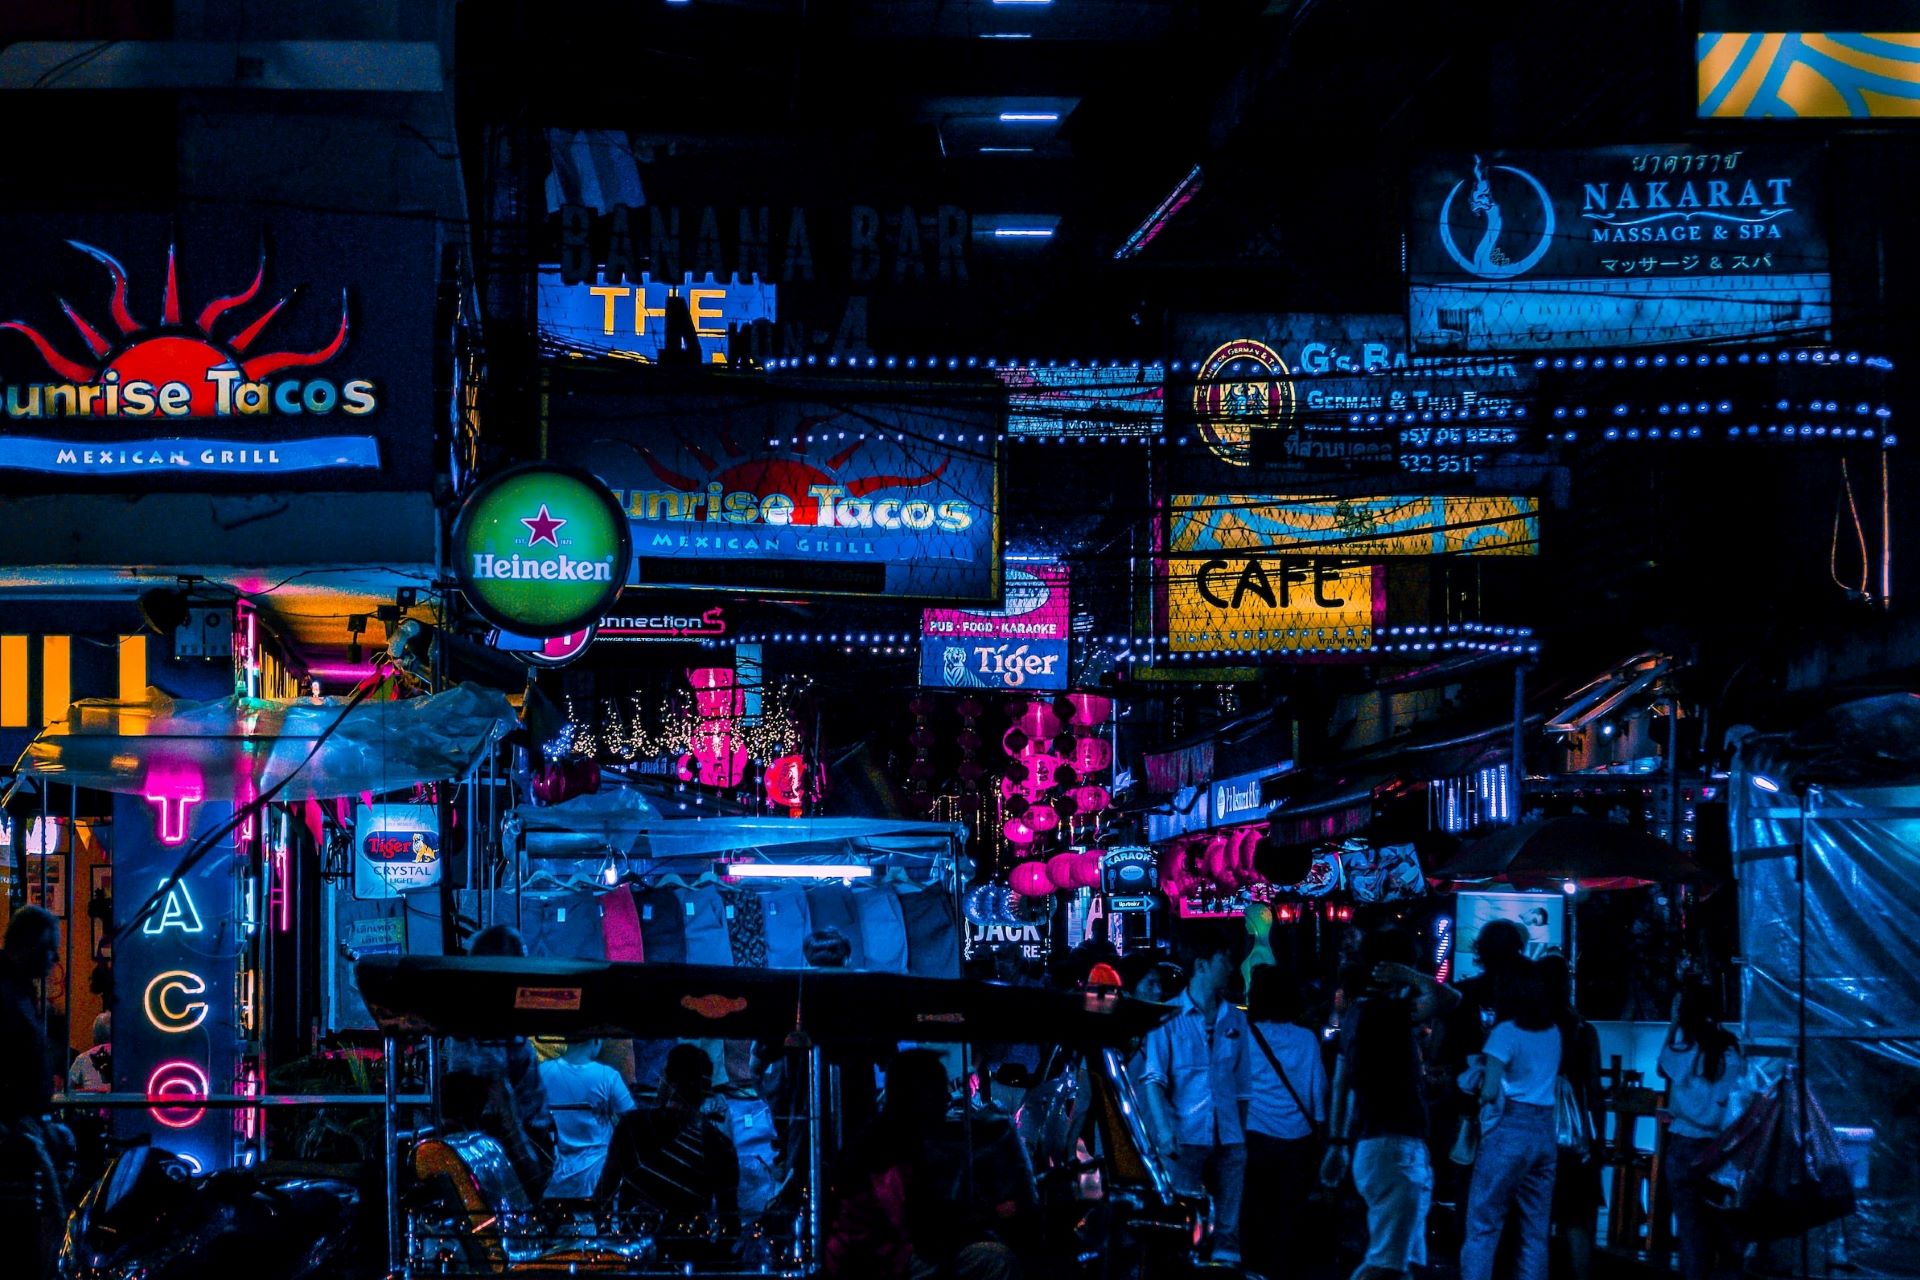 A nightlife scene in Bangkok.